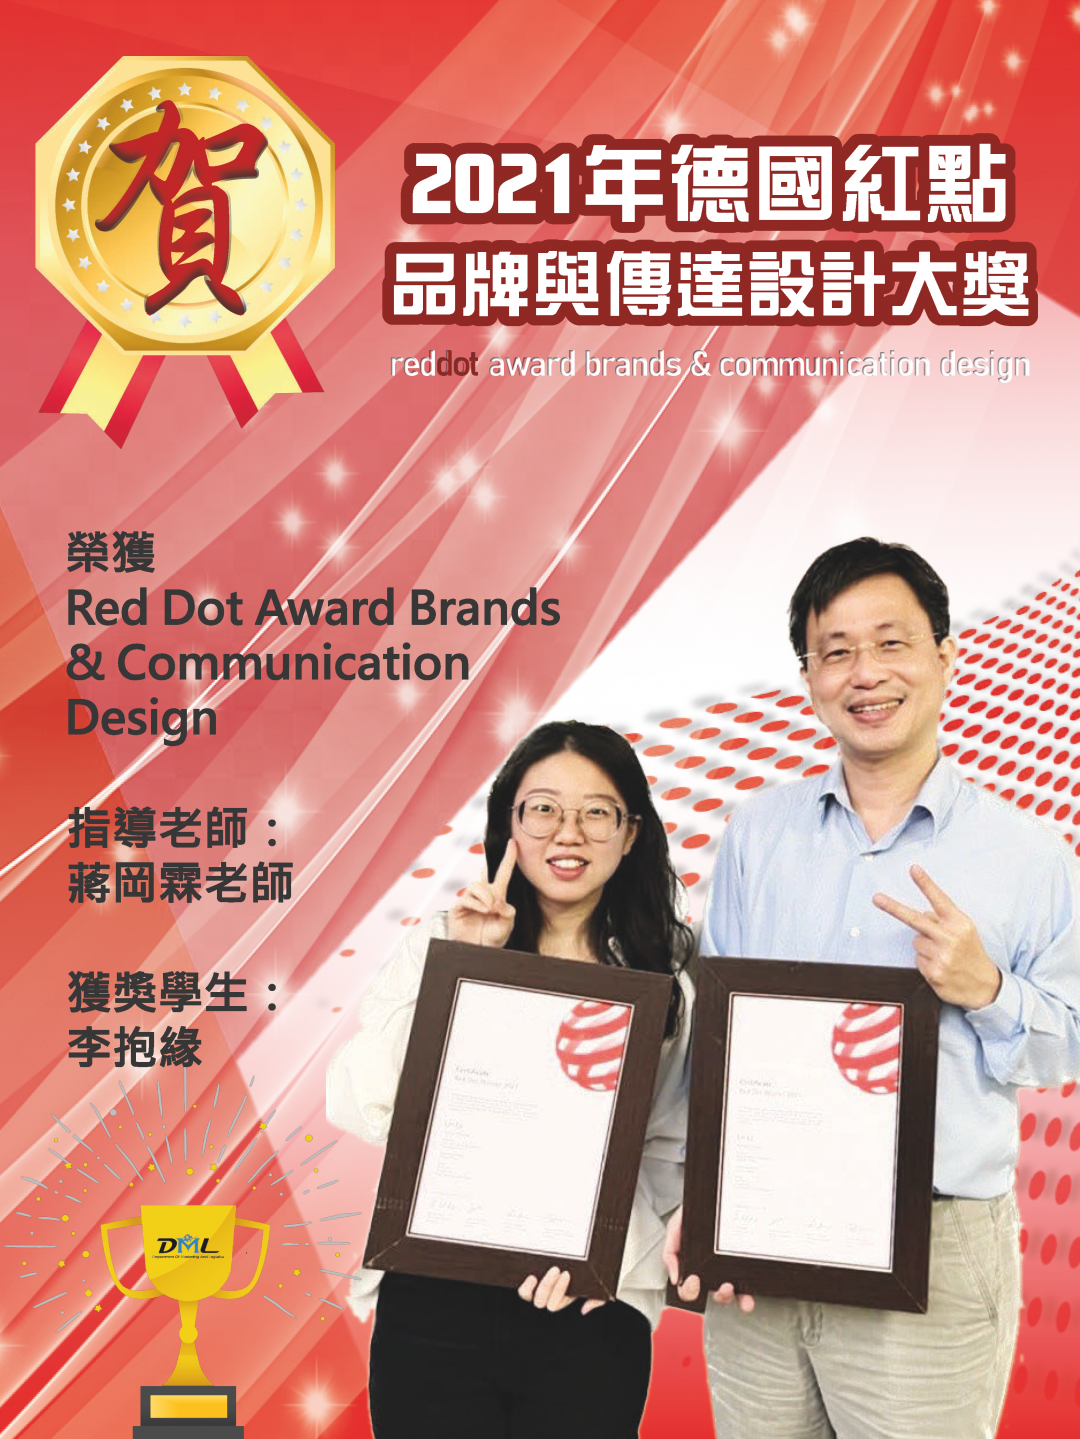 獲獎榮譽解說圖片1；來源：中國科技大學(台北校區)